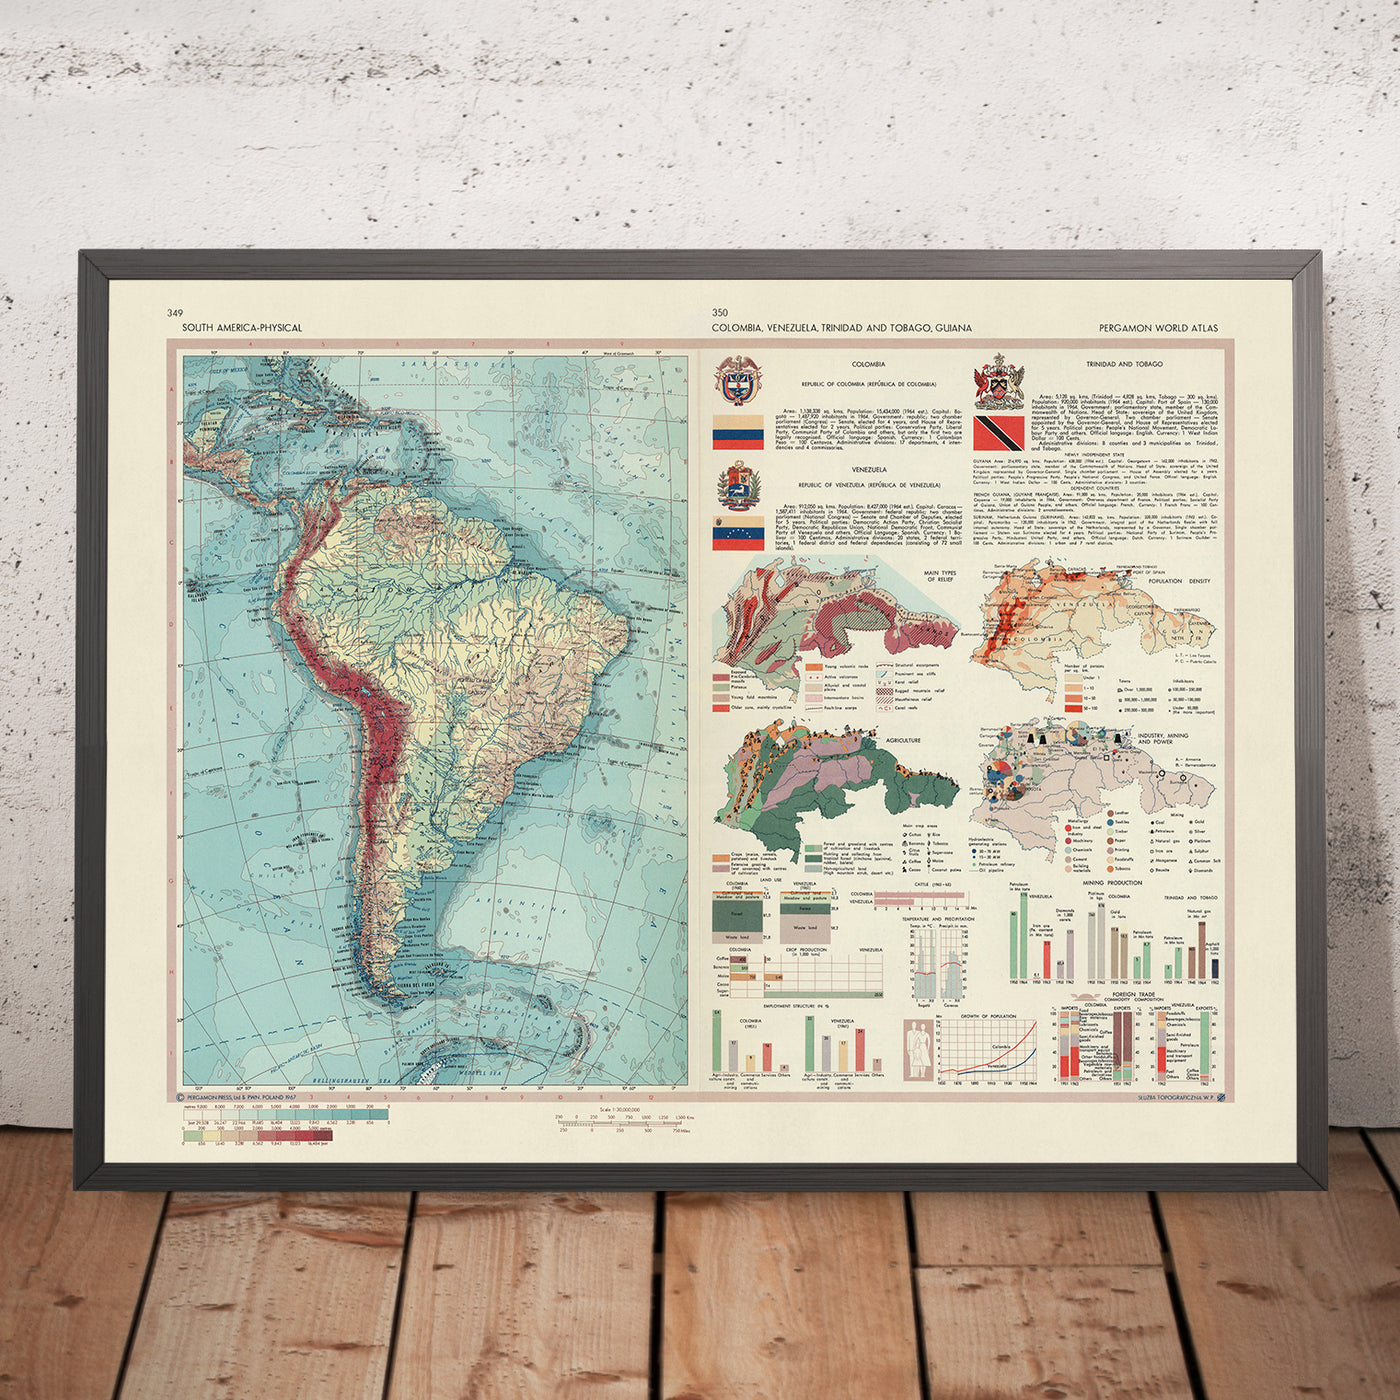 Carte du vieux monde de l'Amérique du Sud par le Service topographique de l'armée polonaise, 1967 : carte physique et politique détaillée avec éléments thématiques